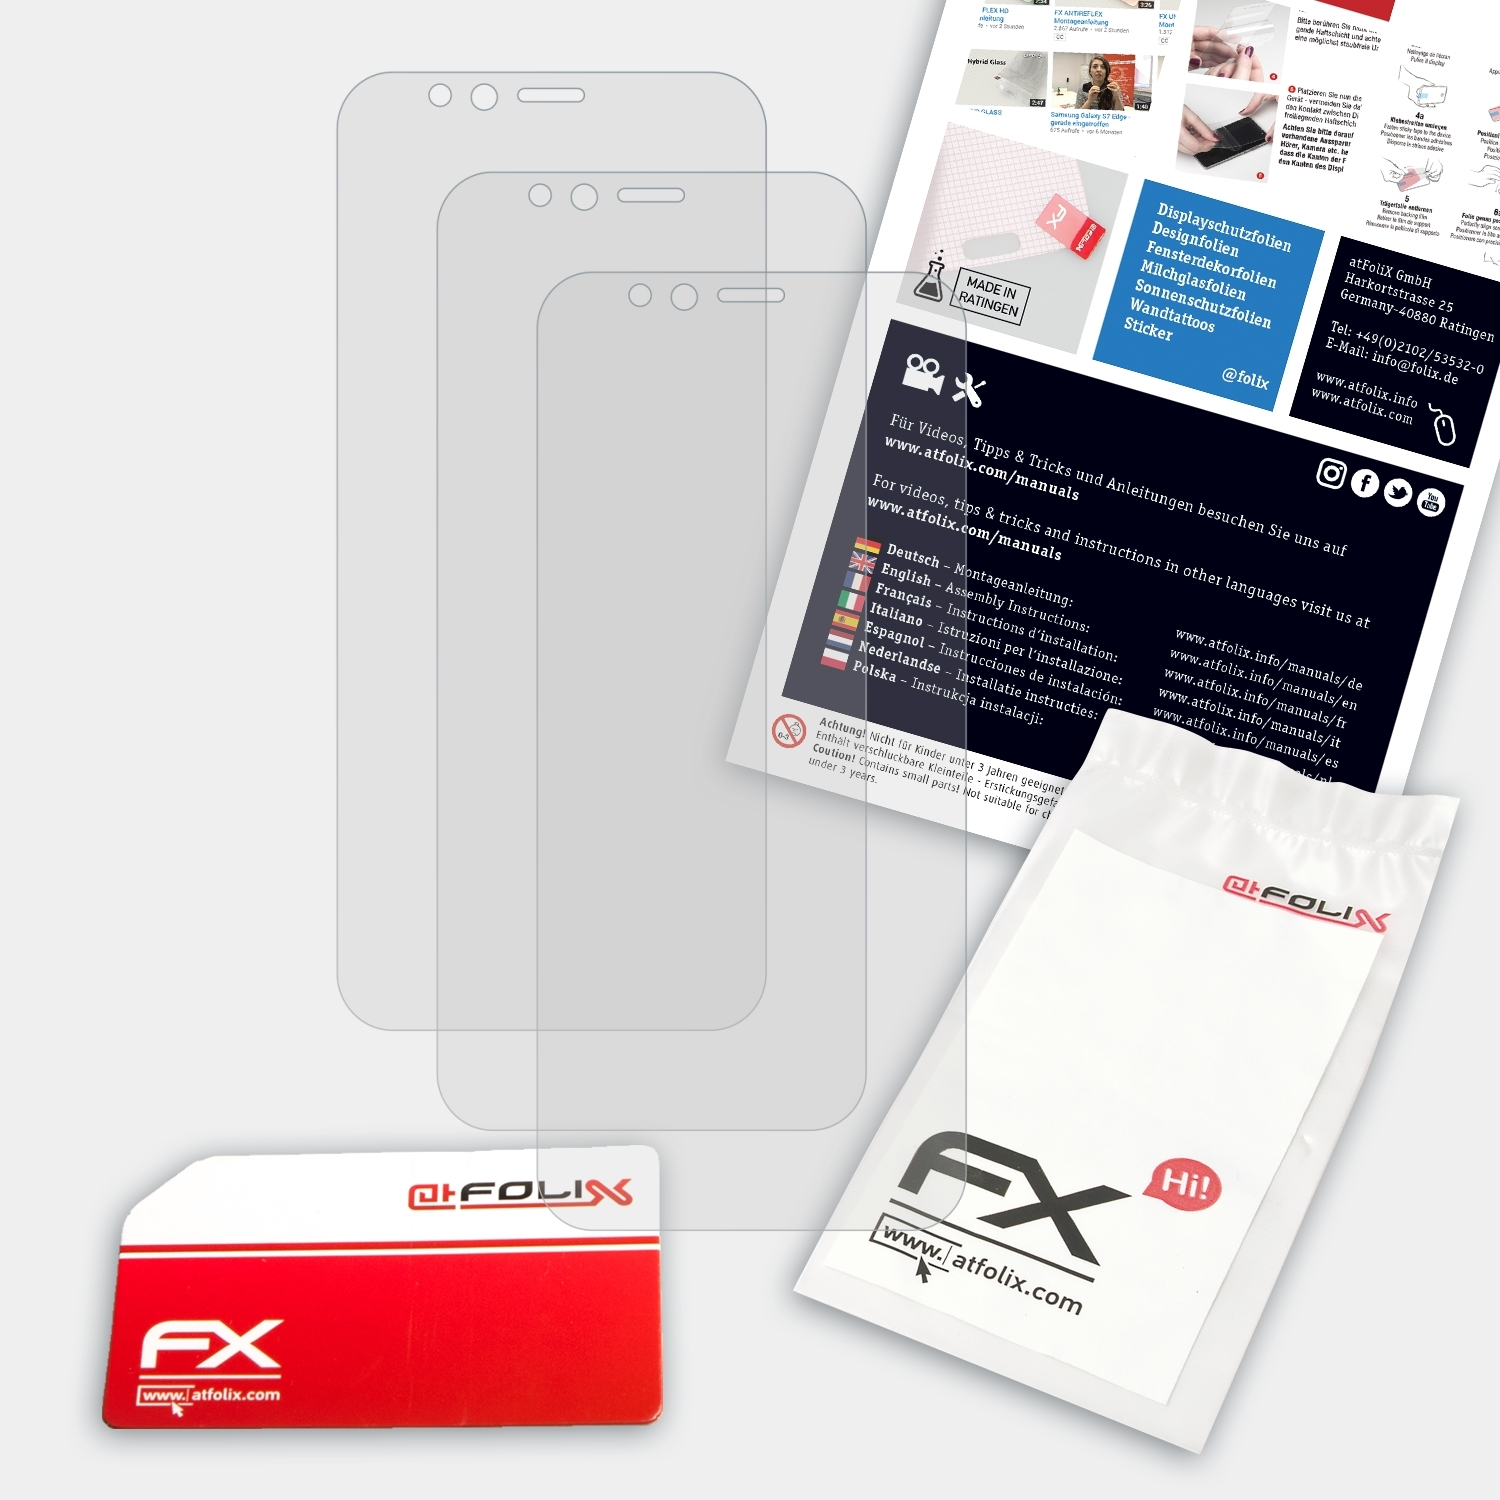 ATFOLIX FX-Antireflex K5 Play) 3x Displayschutz(für Lenovo